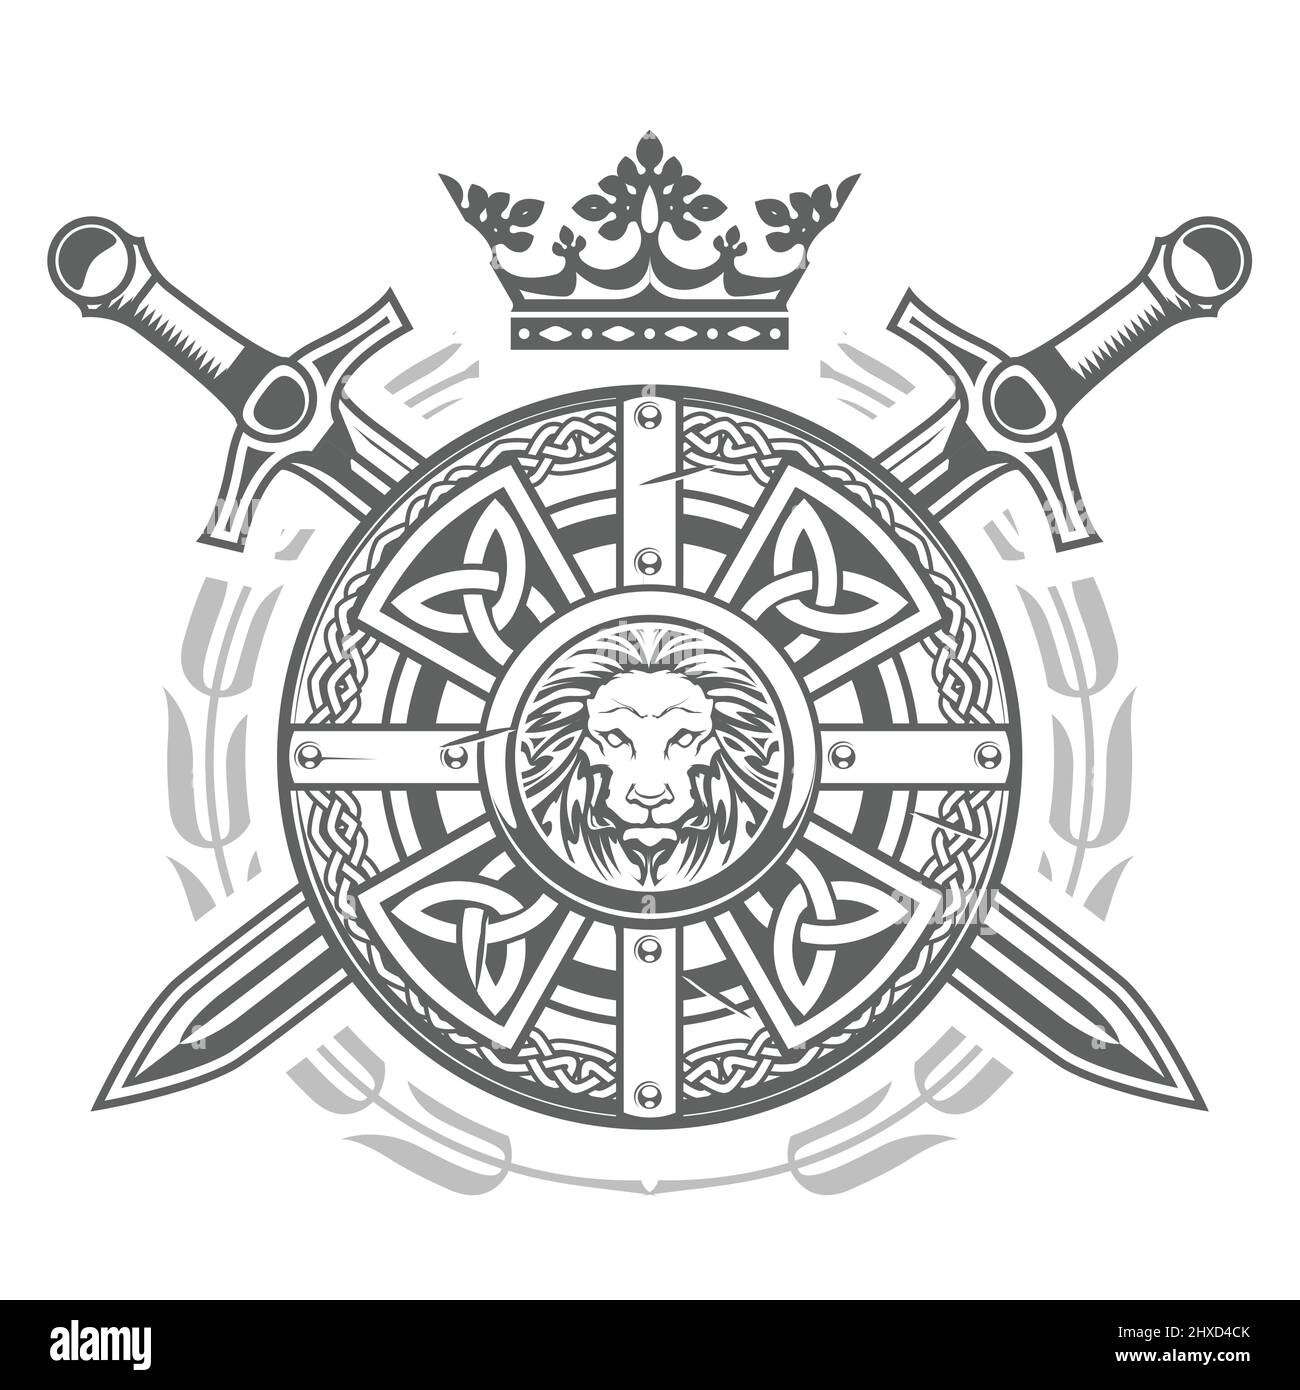 Bouclier rond orné avec motif celtique, cime et épées croisées, emblème chevalier médiéval, blason royal, vecteur Illustration de Vecteur